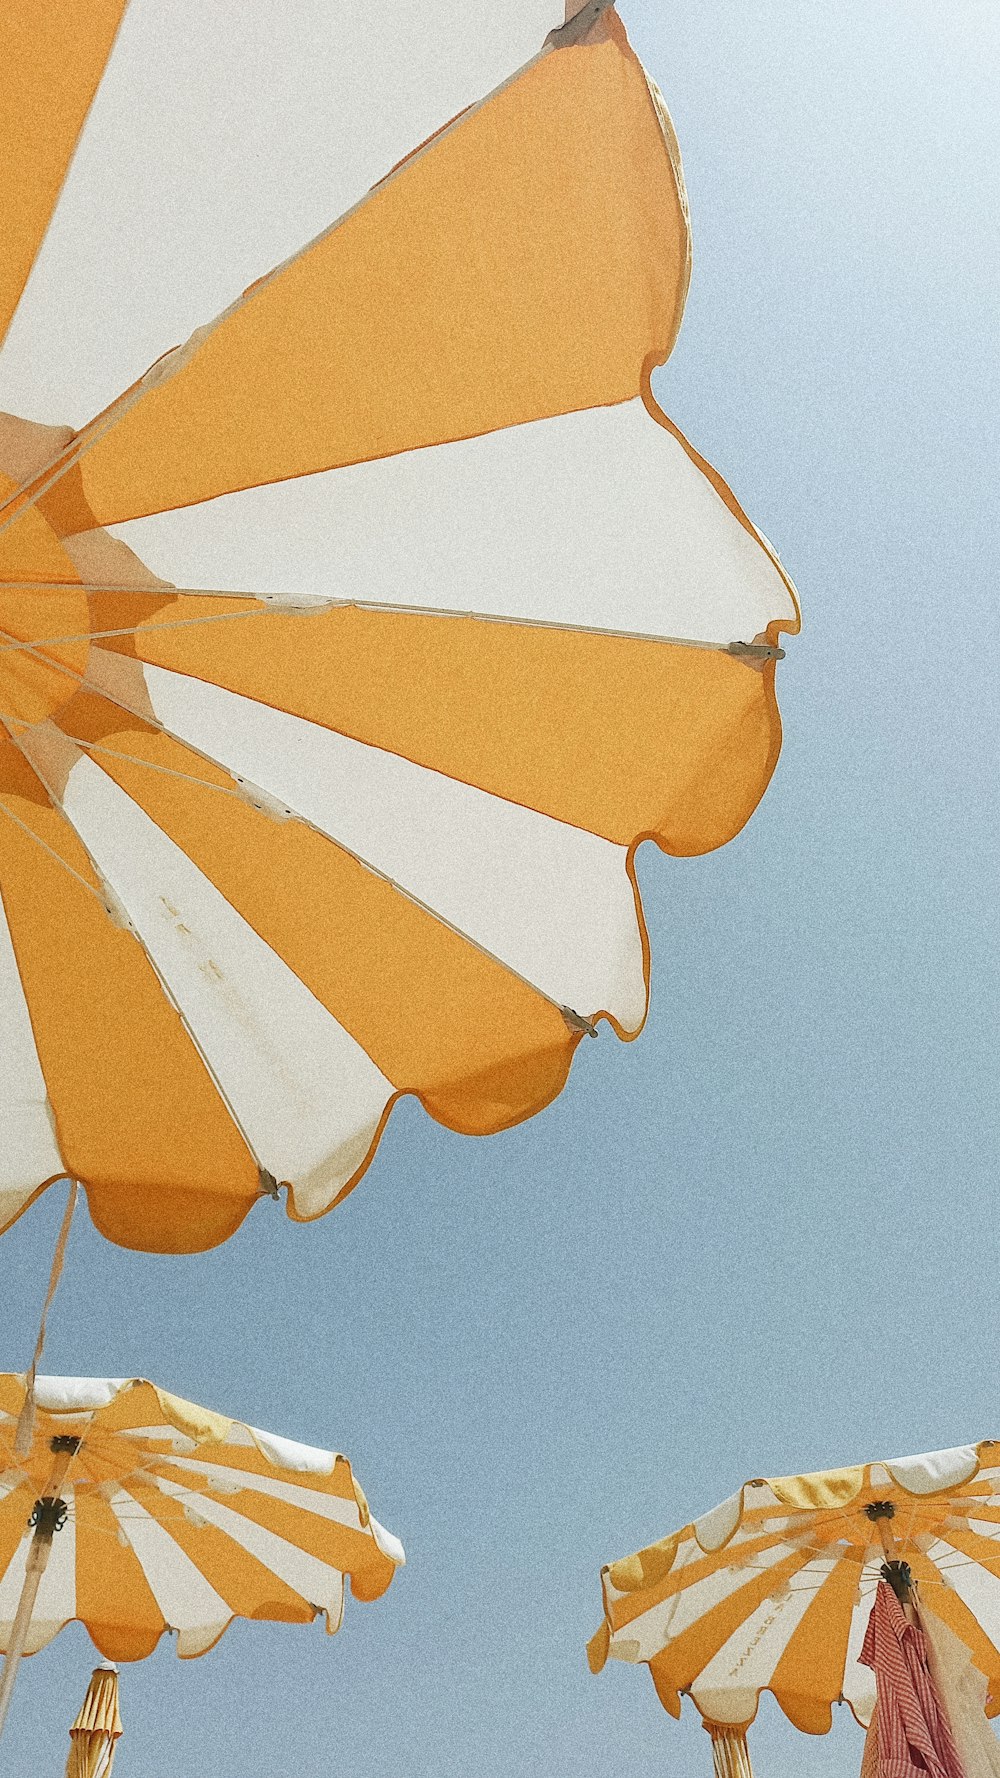 parapluie jaune et orange sous le ciel bleu pendant la journée